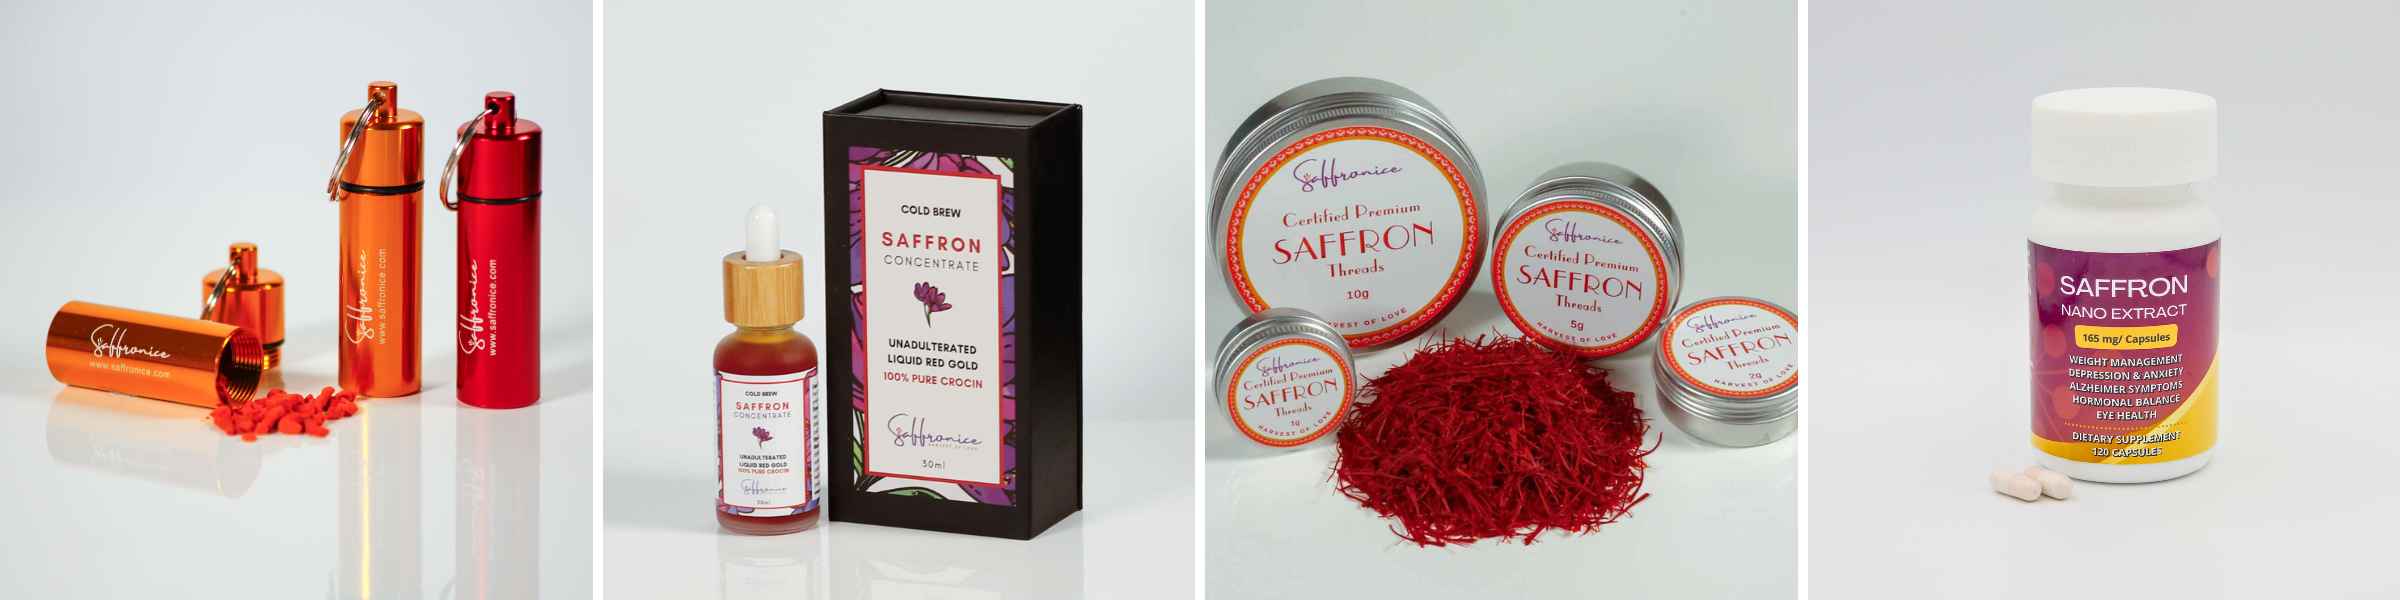 Saffron products